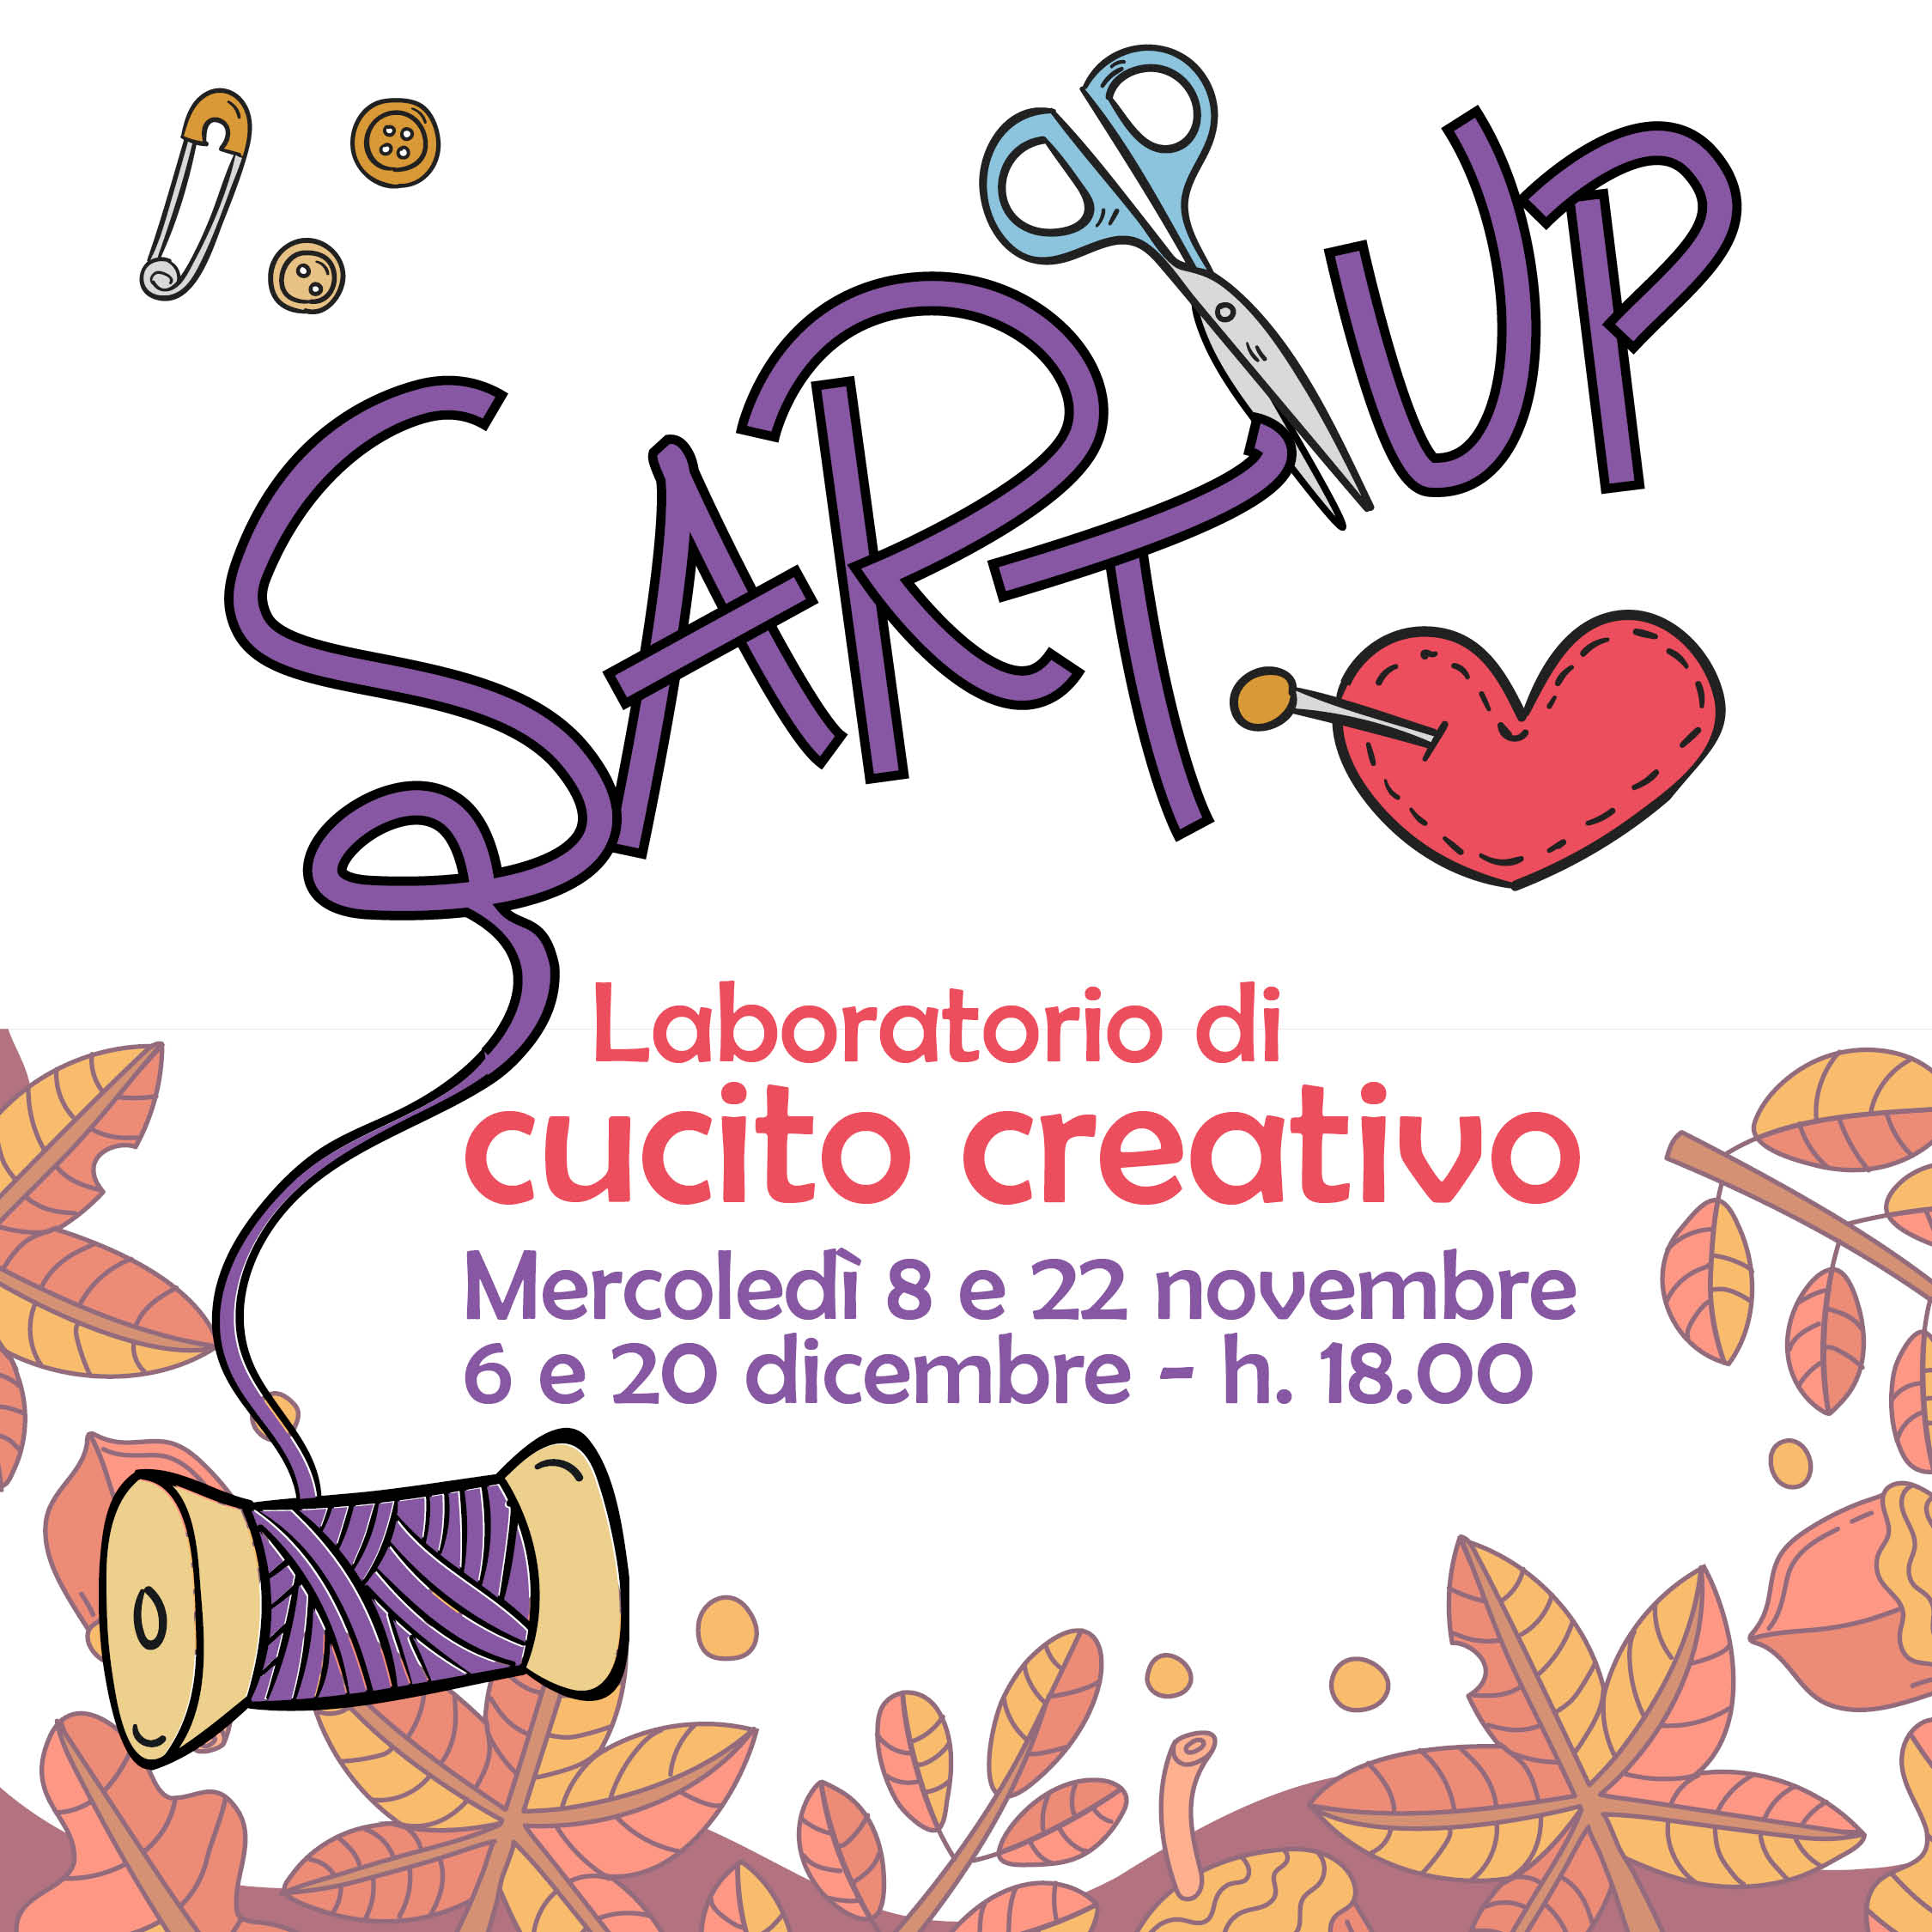 Sart up - Laboratorio di cucito creativo - Vivo in Barriera/Aurora